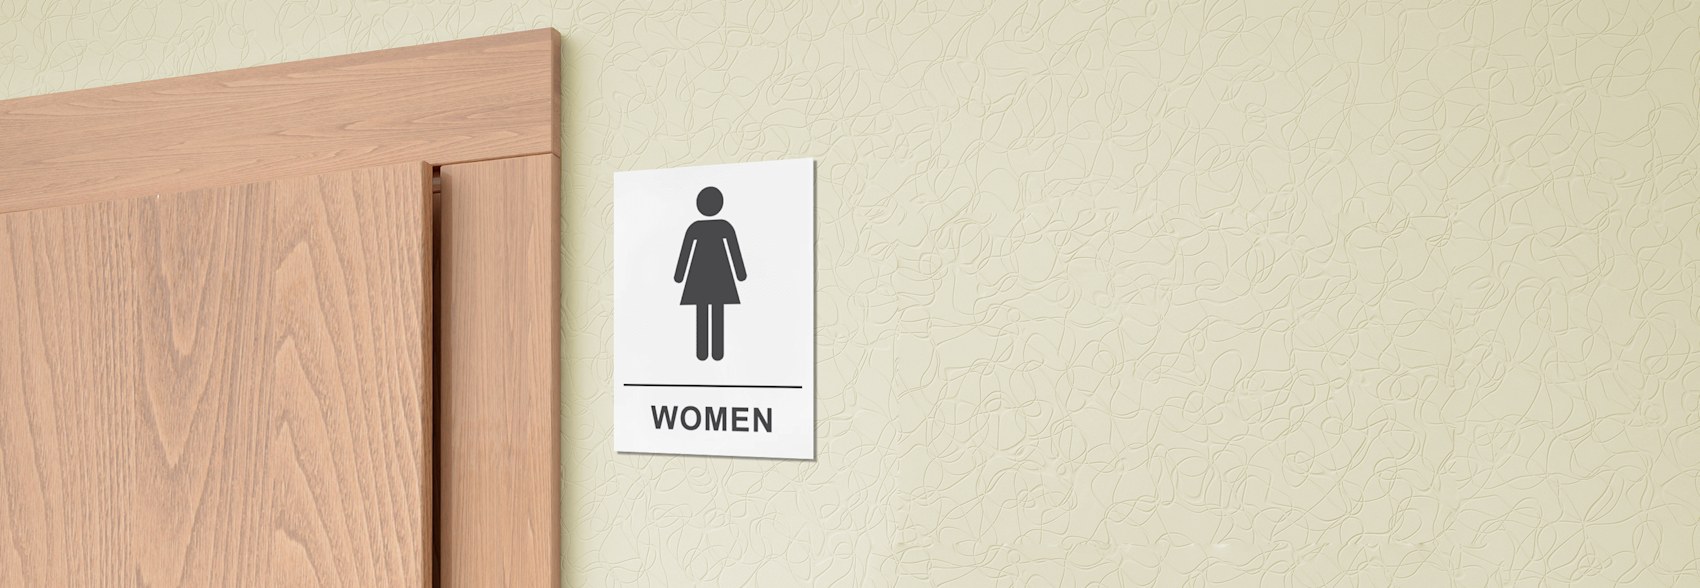 Women’s Restroom Signs 1